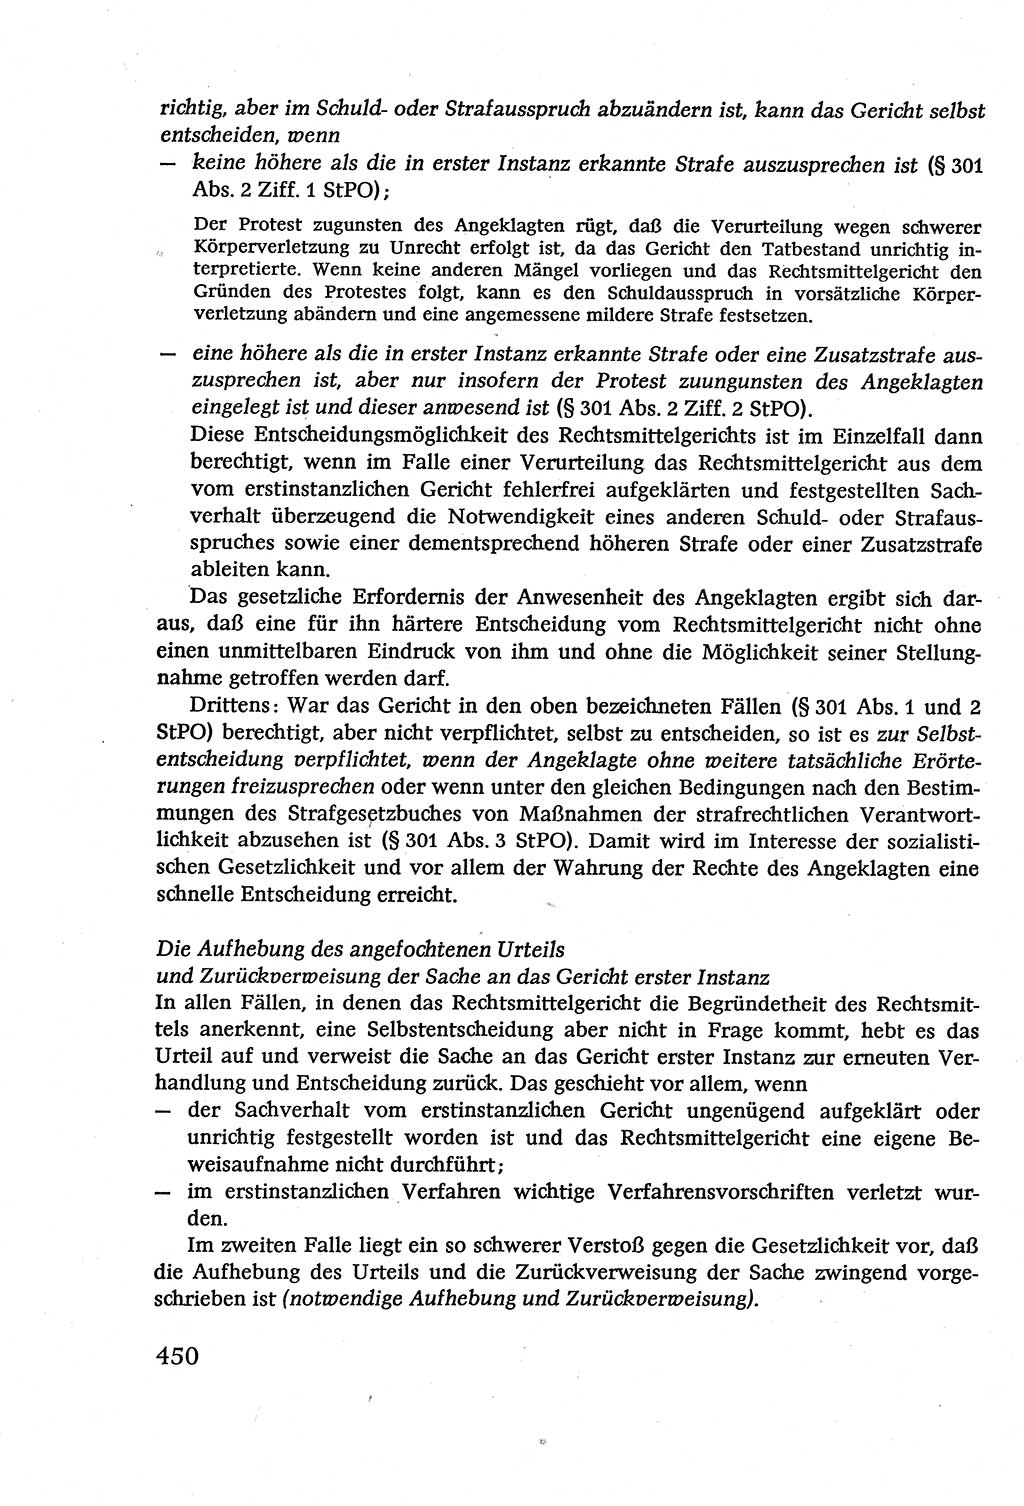 Strafverfahrensrecht [Deutsche Demokratische Republik (DDR)], Lehrbuch 1977, Seite 450 (Strafverf.-R. DDR Lb. 1977, S. 450)